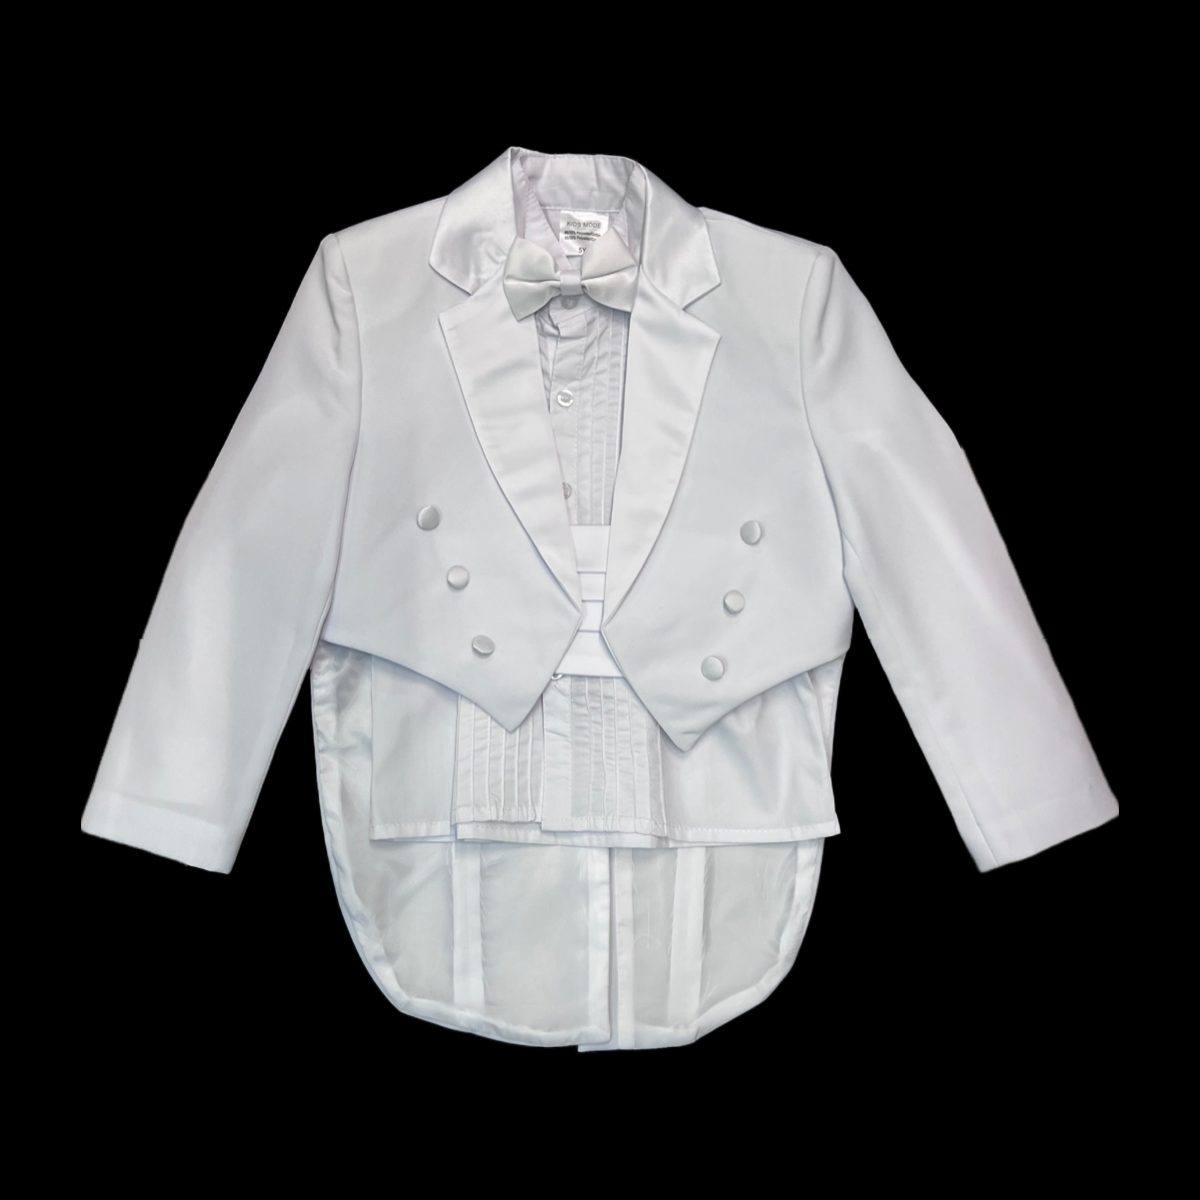 5-Piece White Tuxedo with Tail